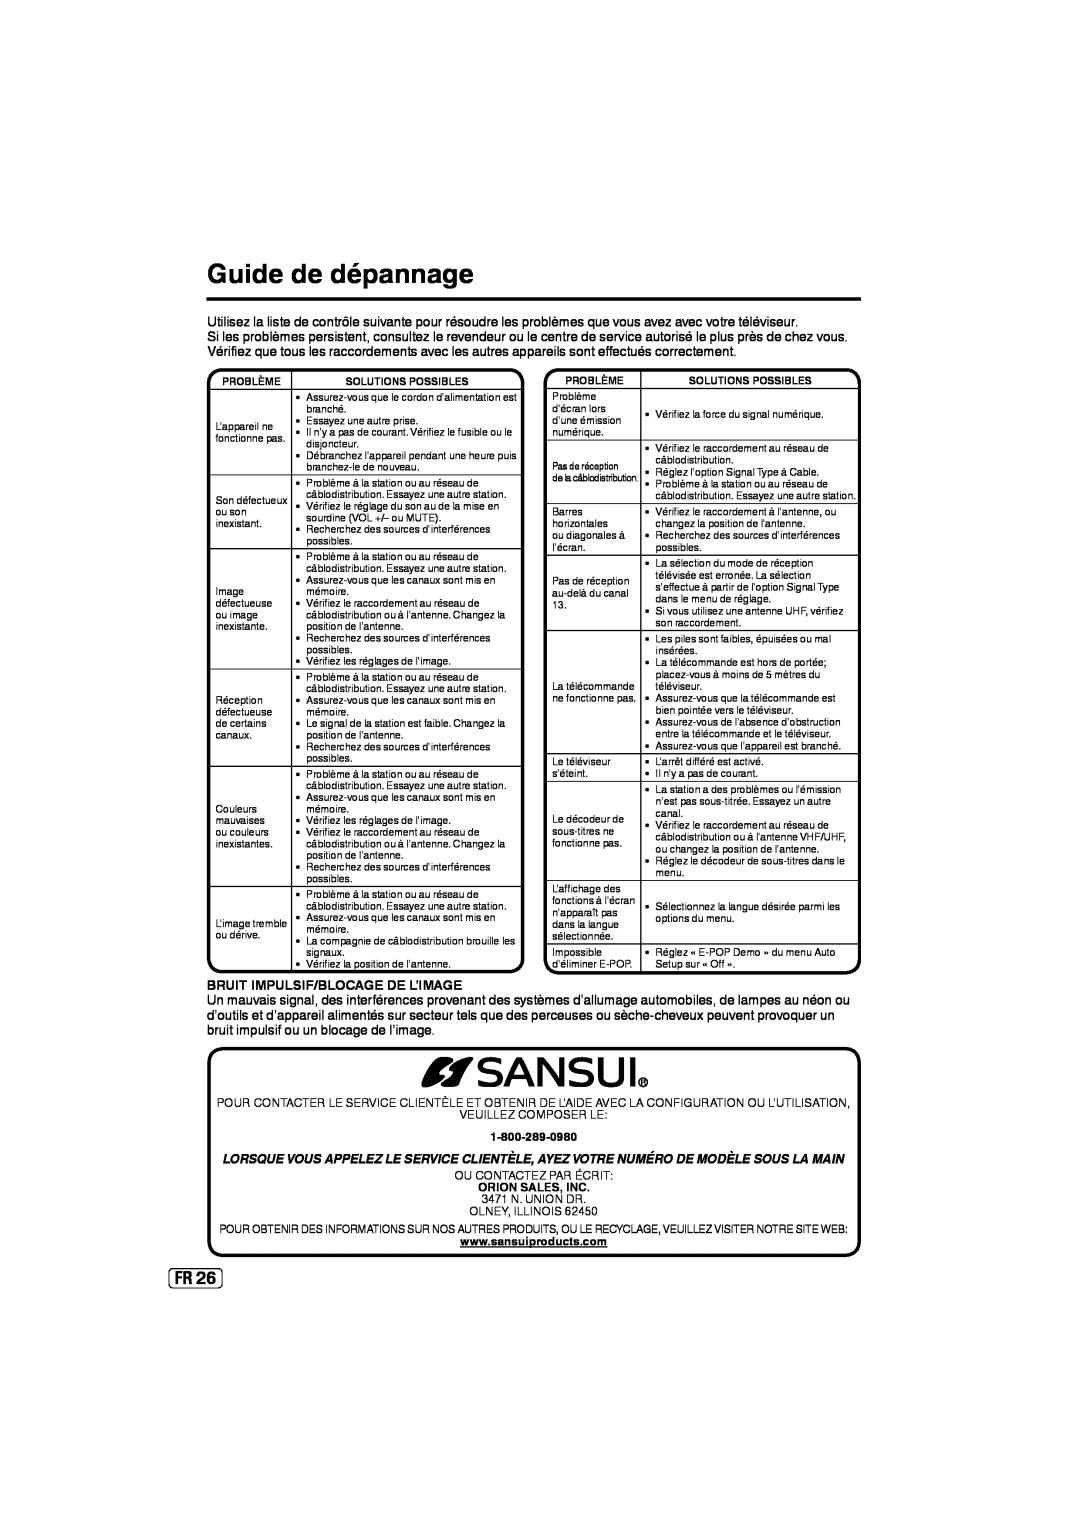 Sansui SLED2237 owner manual Guide de dépannage, Bruit Impulsif/Blocage De L’Image 